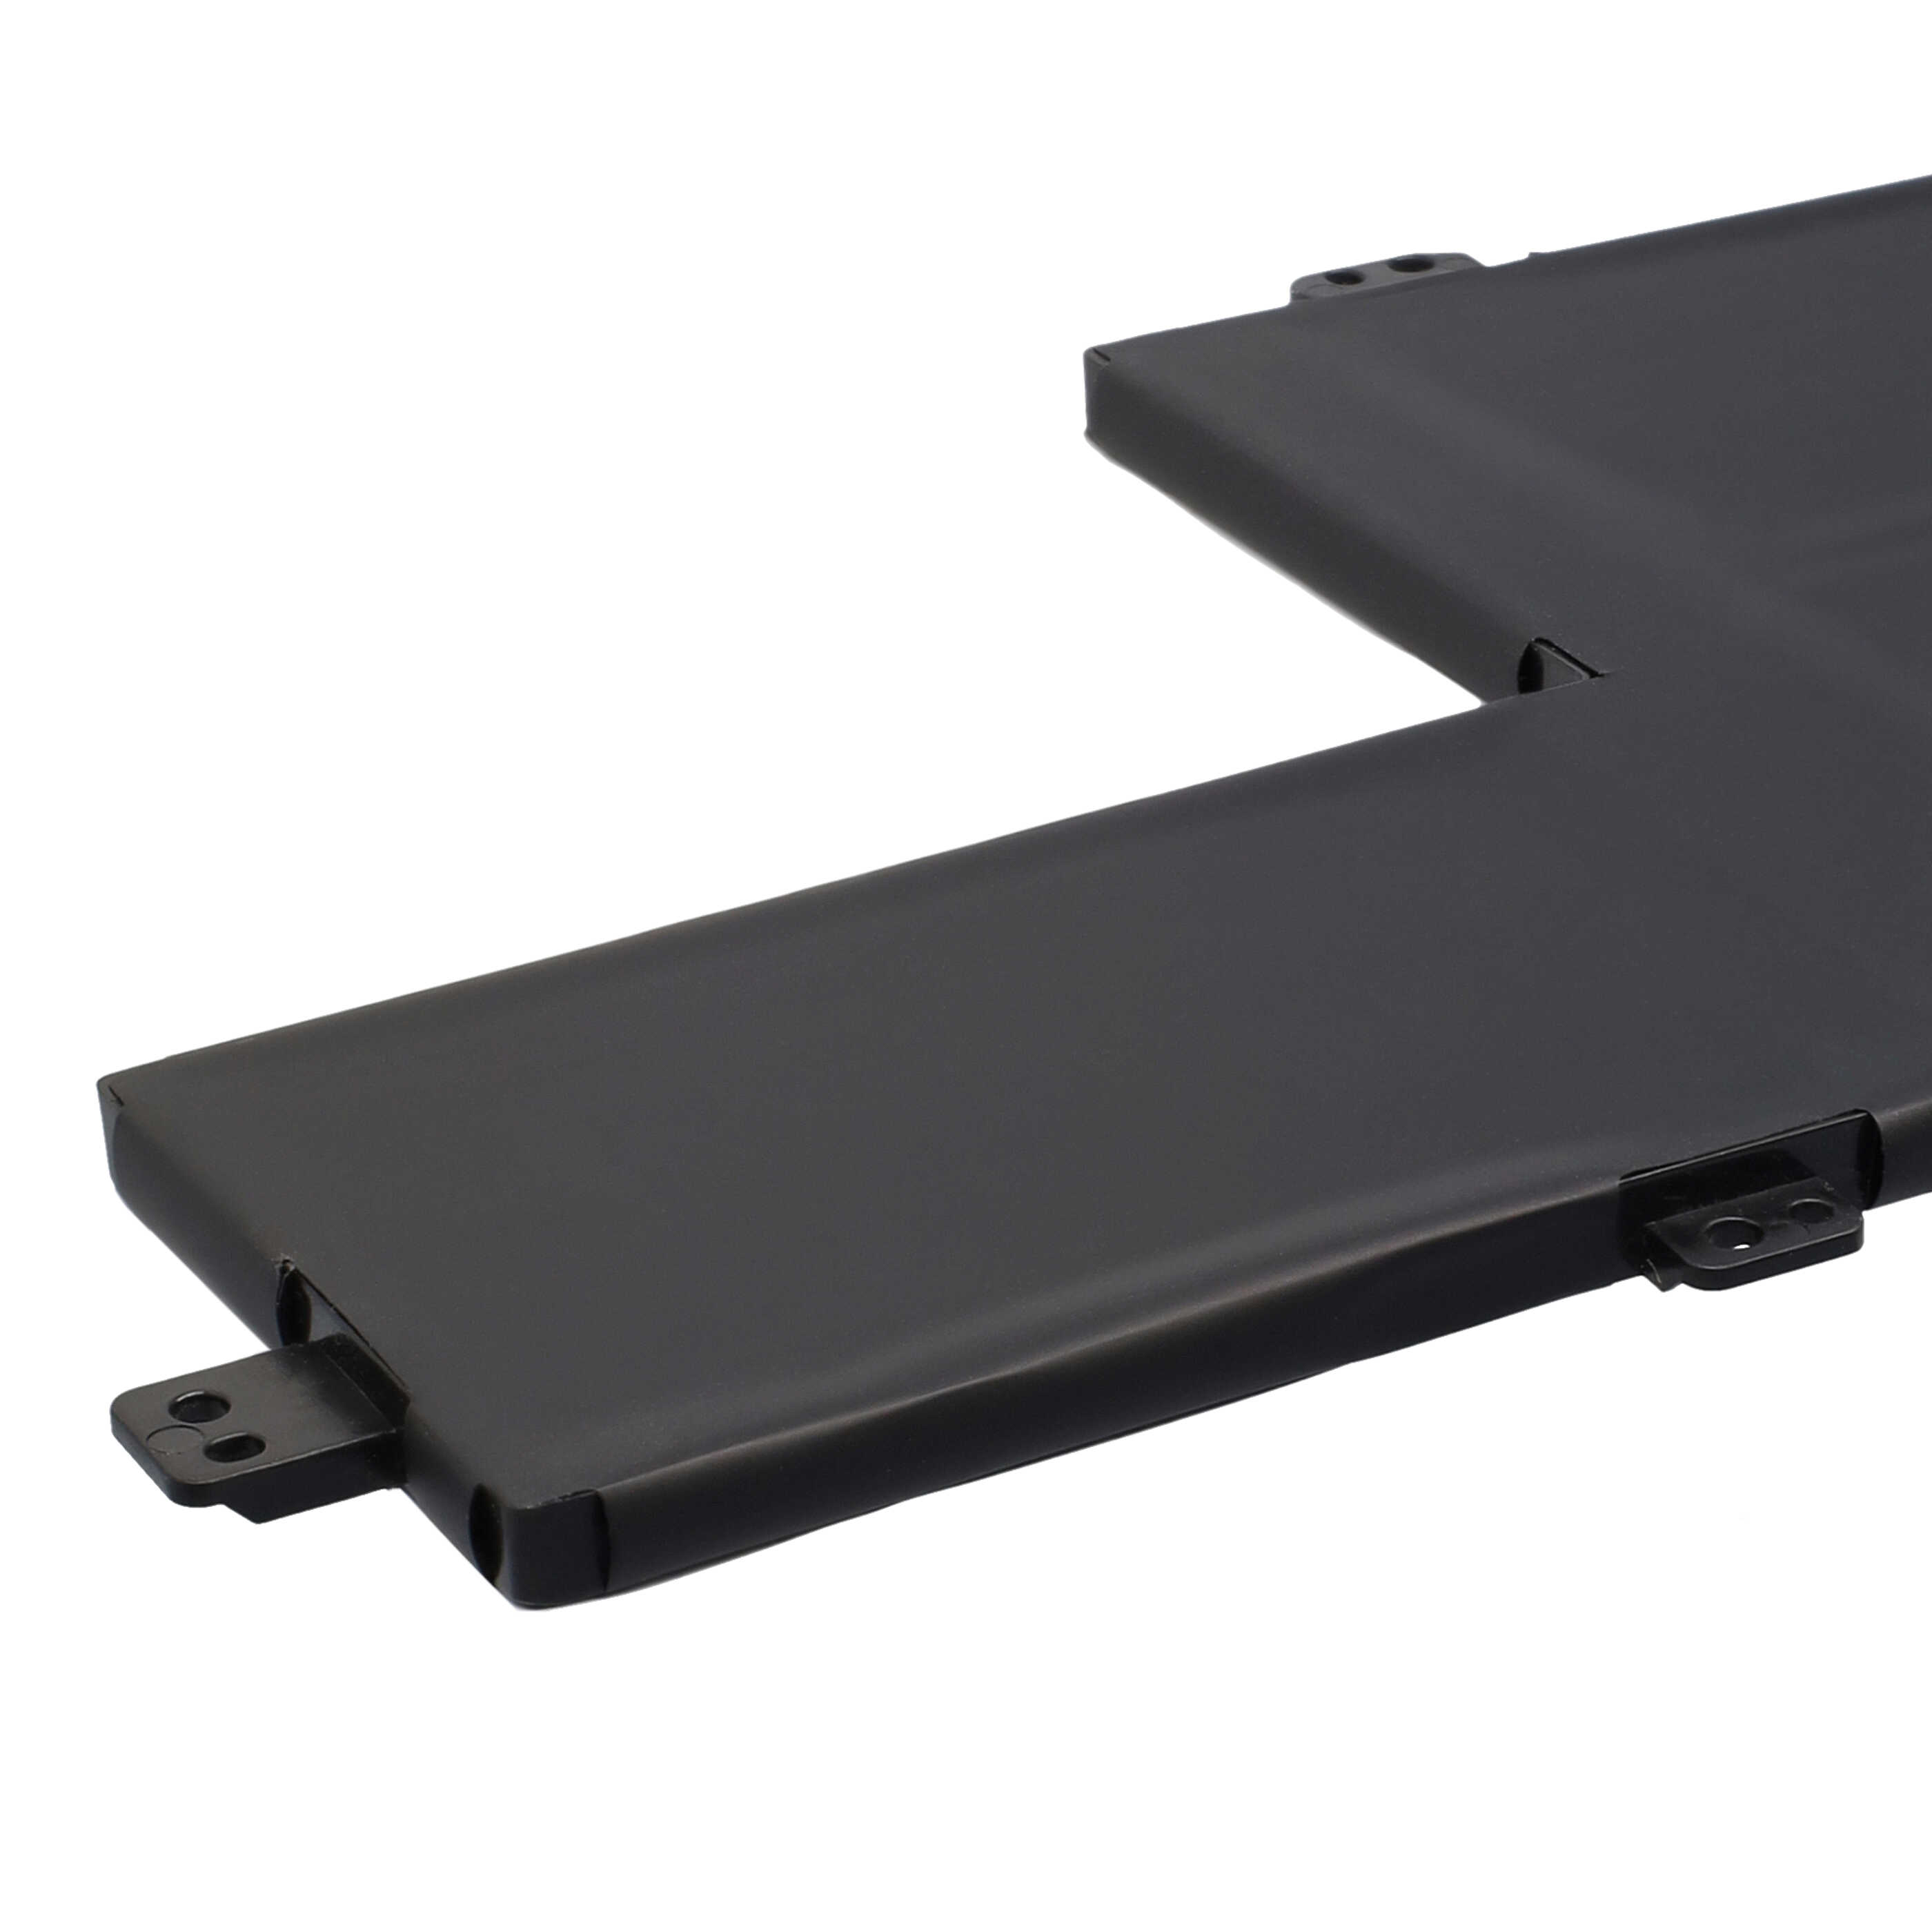 Notebook-Akku passend für Lenovo IdeaPad S540 15, S540-15iml, S540-15iml 81ng, S540-15iml 81ng-003k (81ng003km